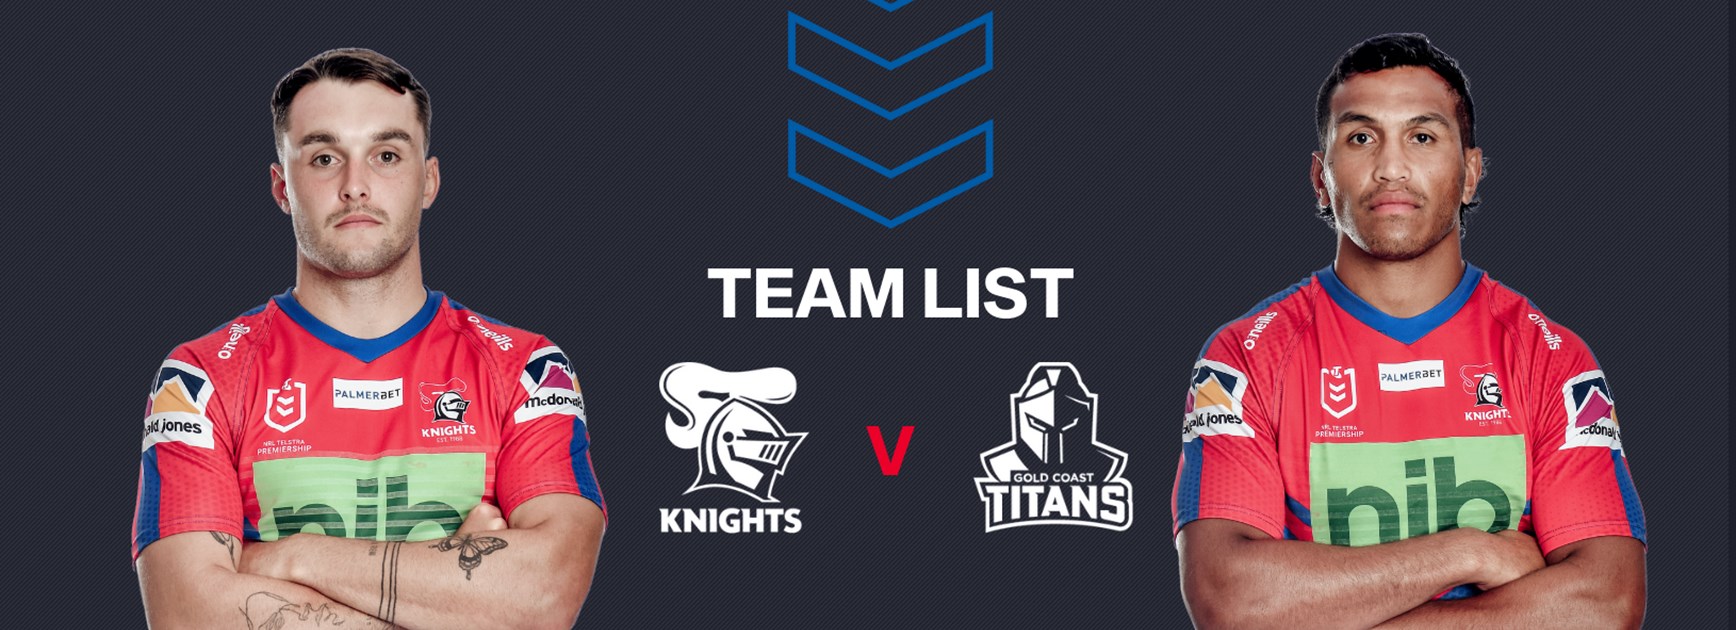 Knights v Titans Round 16 NRL team list